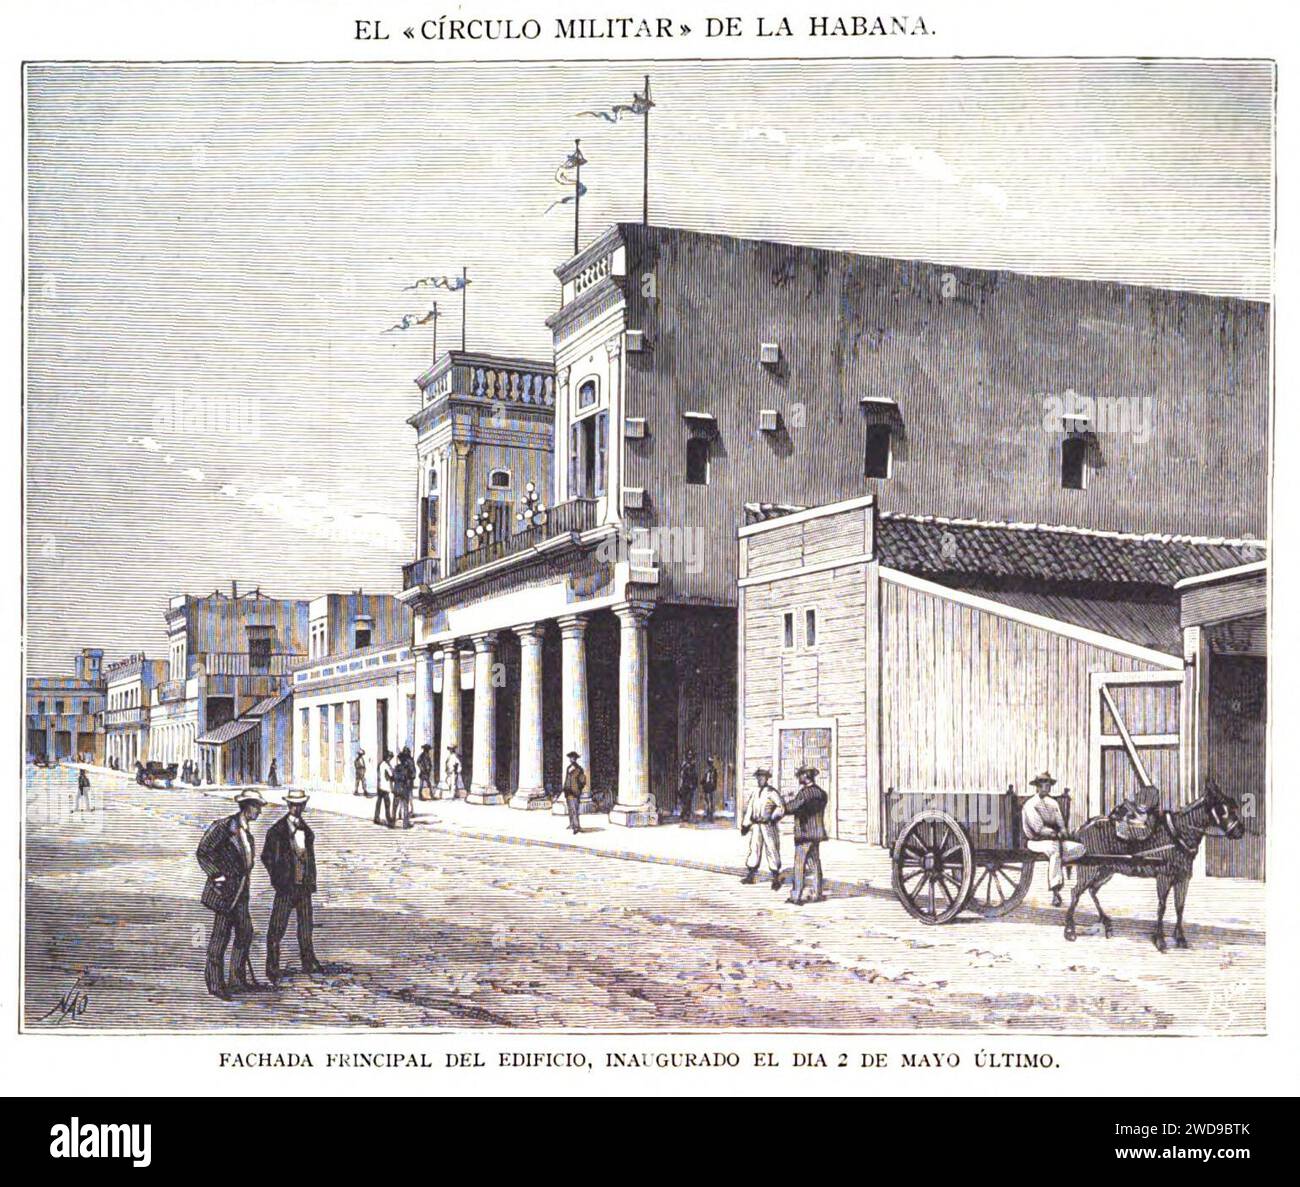 1883-07-30, La Ilustración Española y Americana, El «Círculo Militar» de La Habana.—Fachada principal del edificio, inaugurado el día 2 de mayo último. Stock Photo